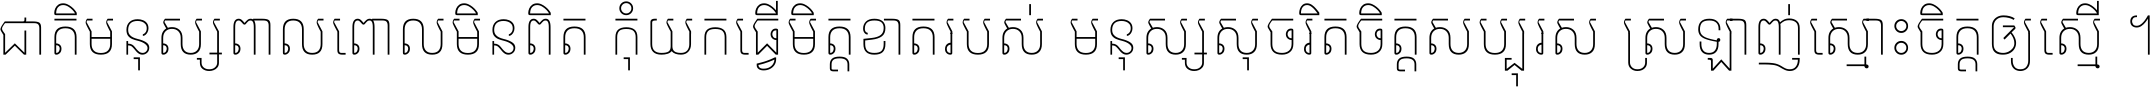 Noto Sans Khmer UI Condensed Thin